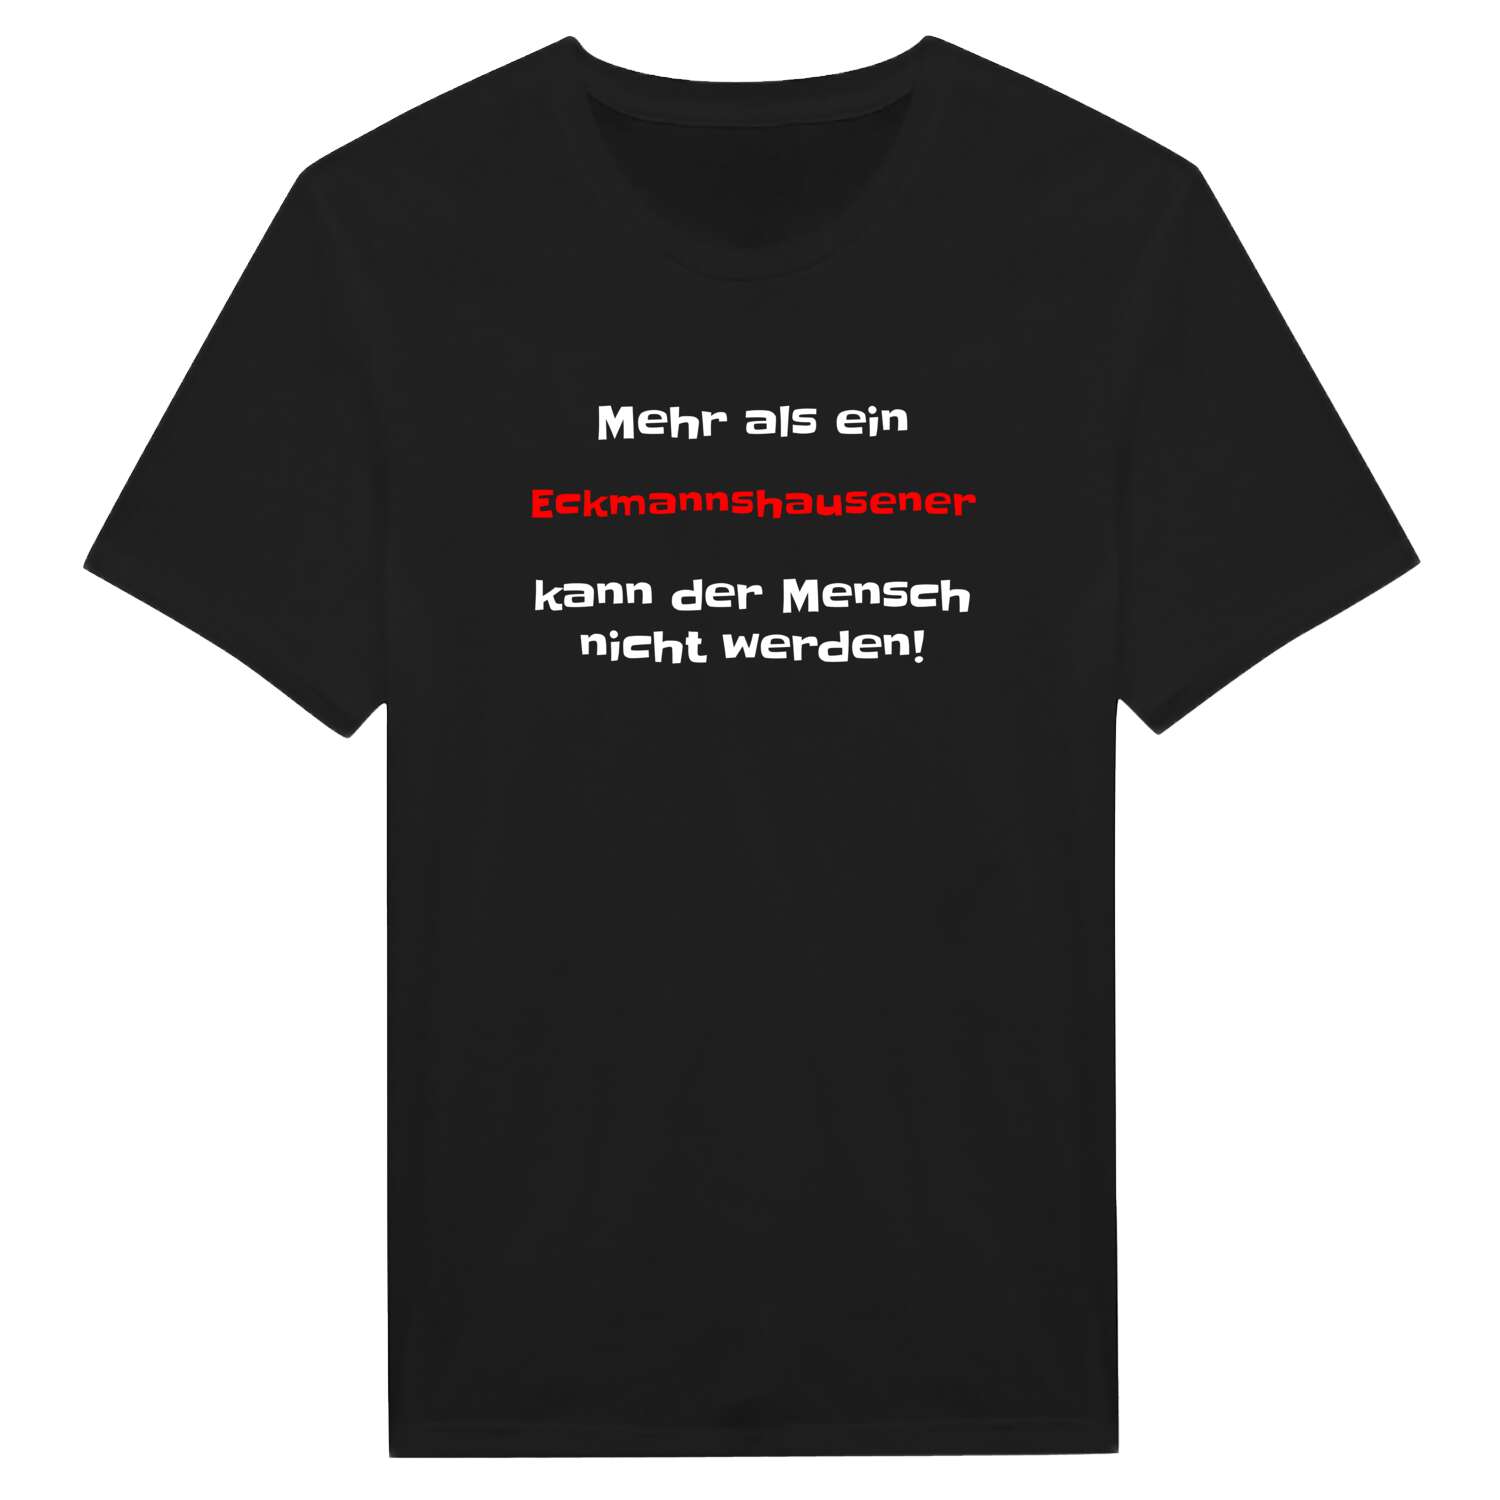 Eckmannshausen T-Shirt »Mehr als ein«